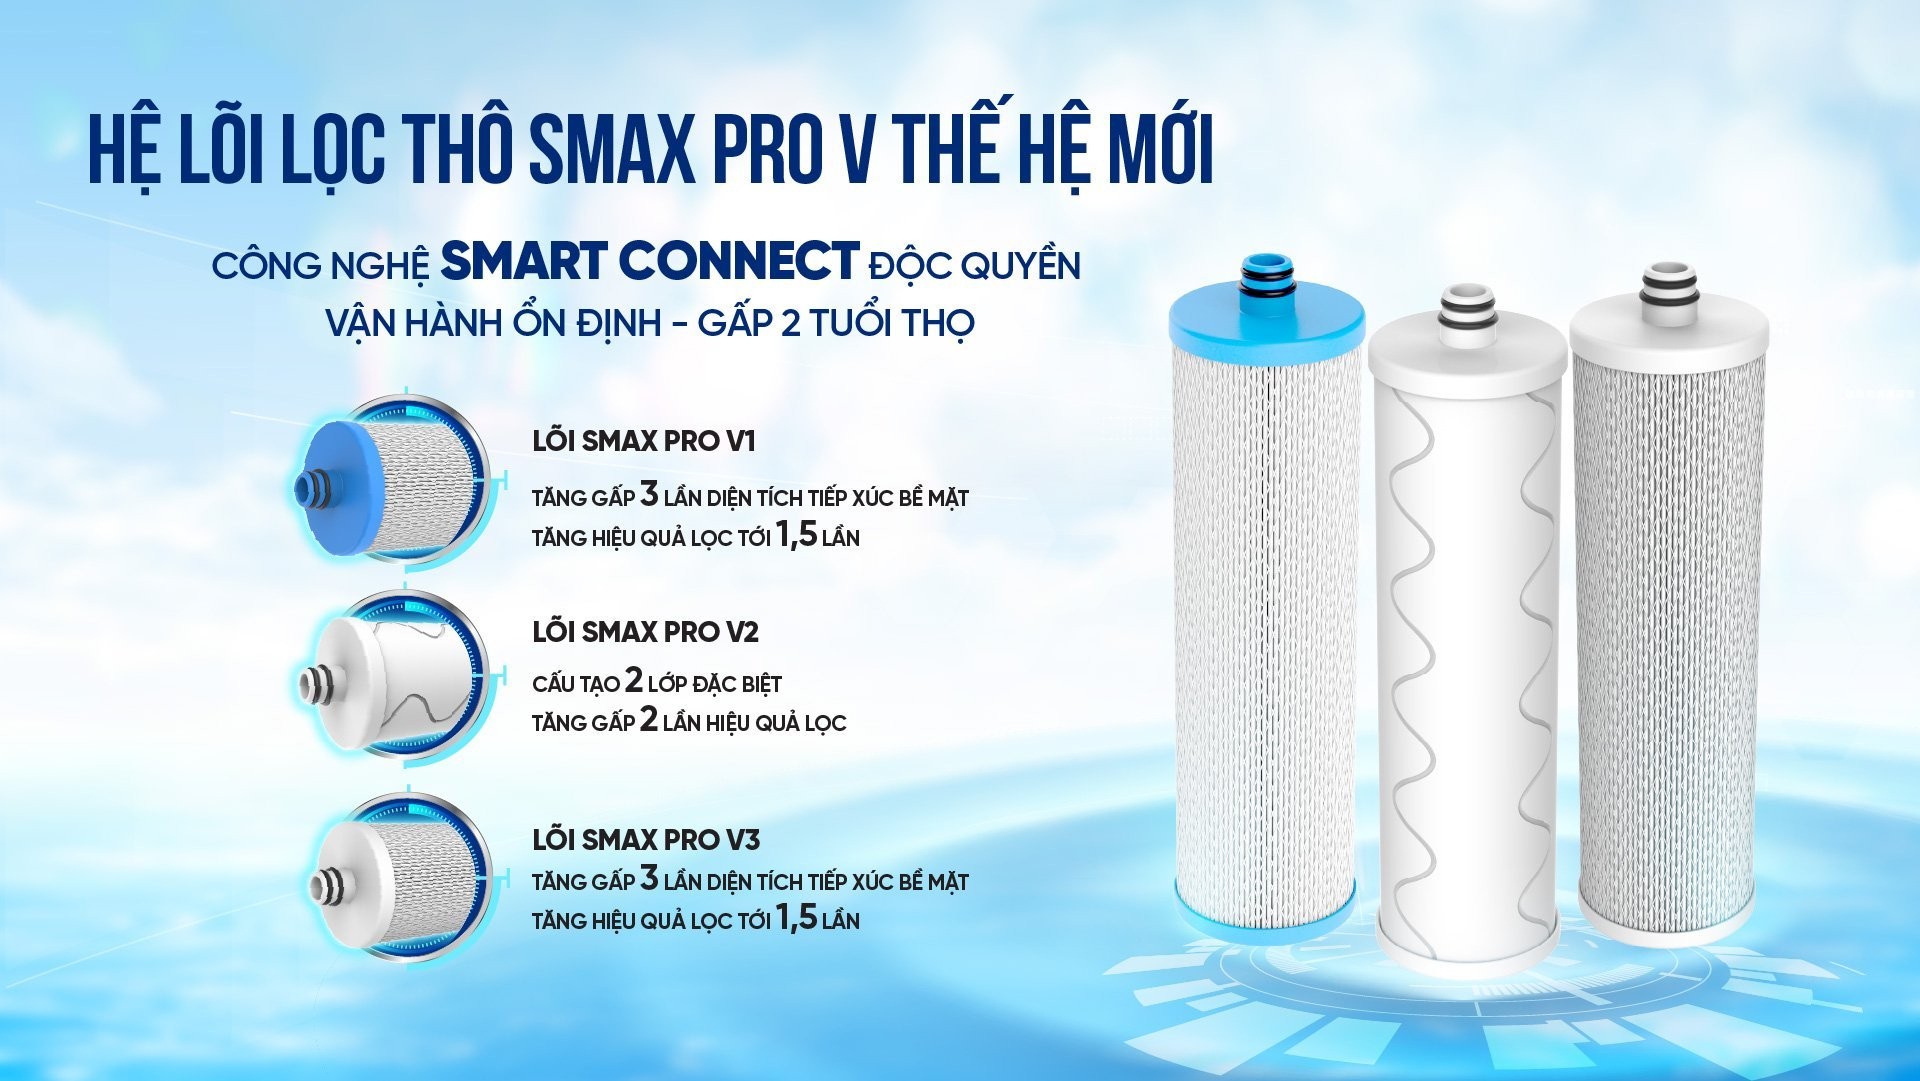 Máy lọc nước nóng lạnh Karofi KHY-TN86 - Hệ lõi lọc thô SMAX PRO V thế hệ mới